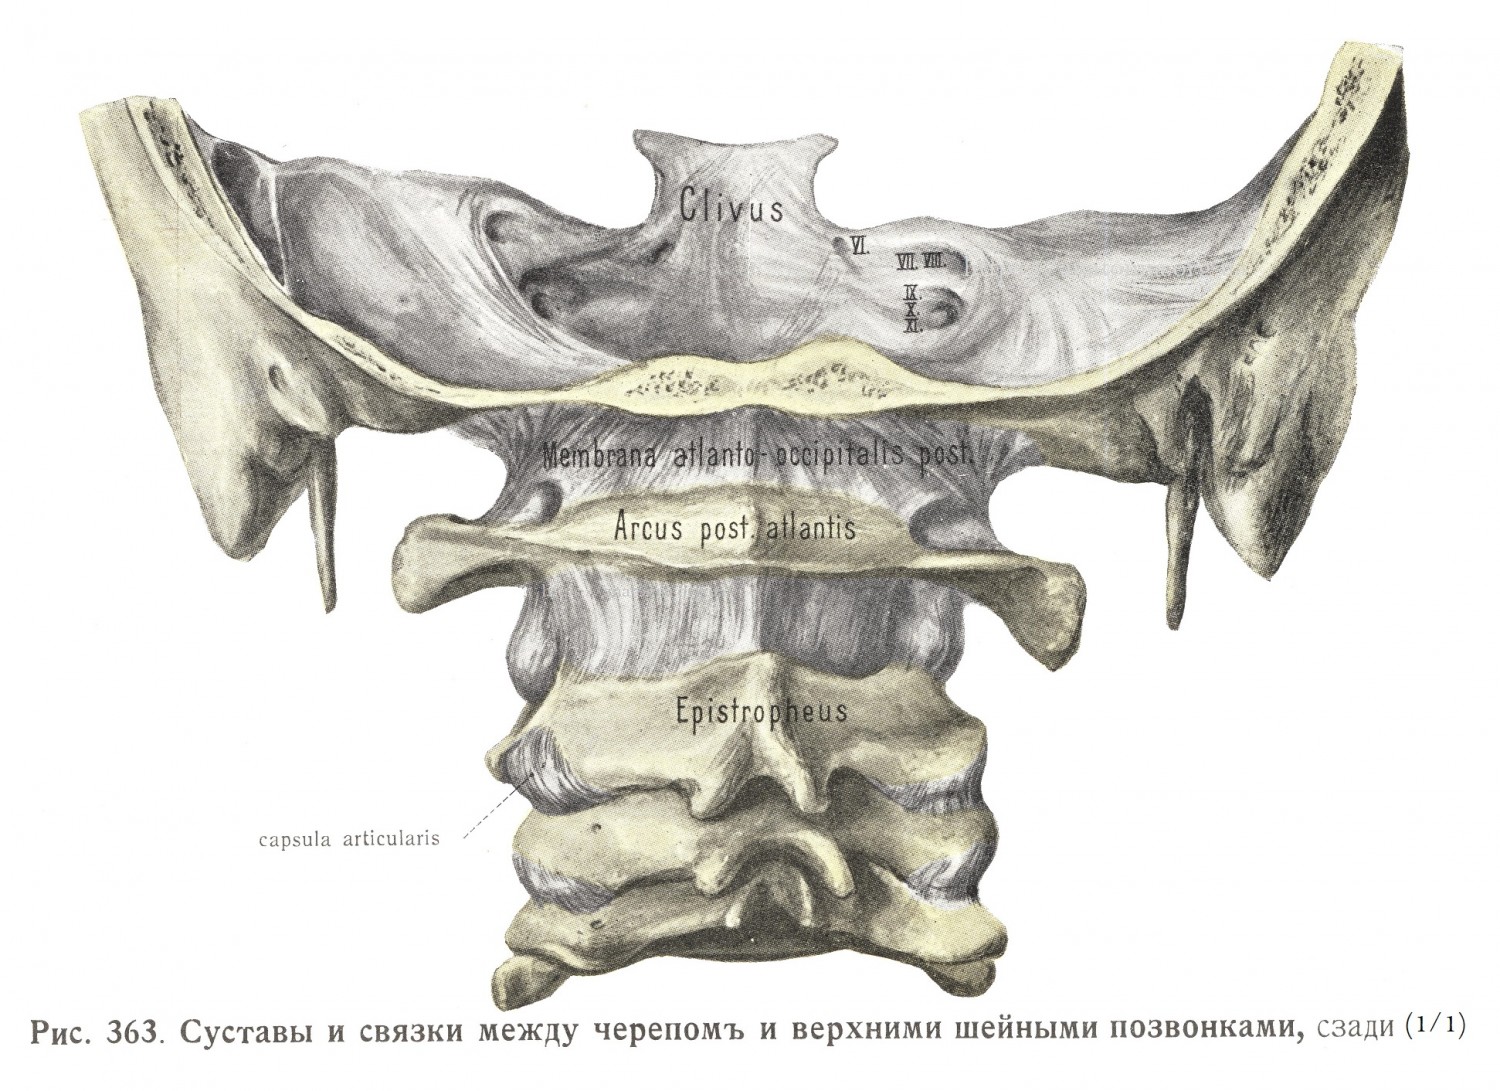 Суставы и связки между черепом и верхними шейными позвонками, сзади